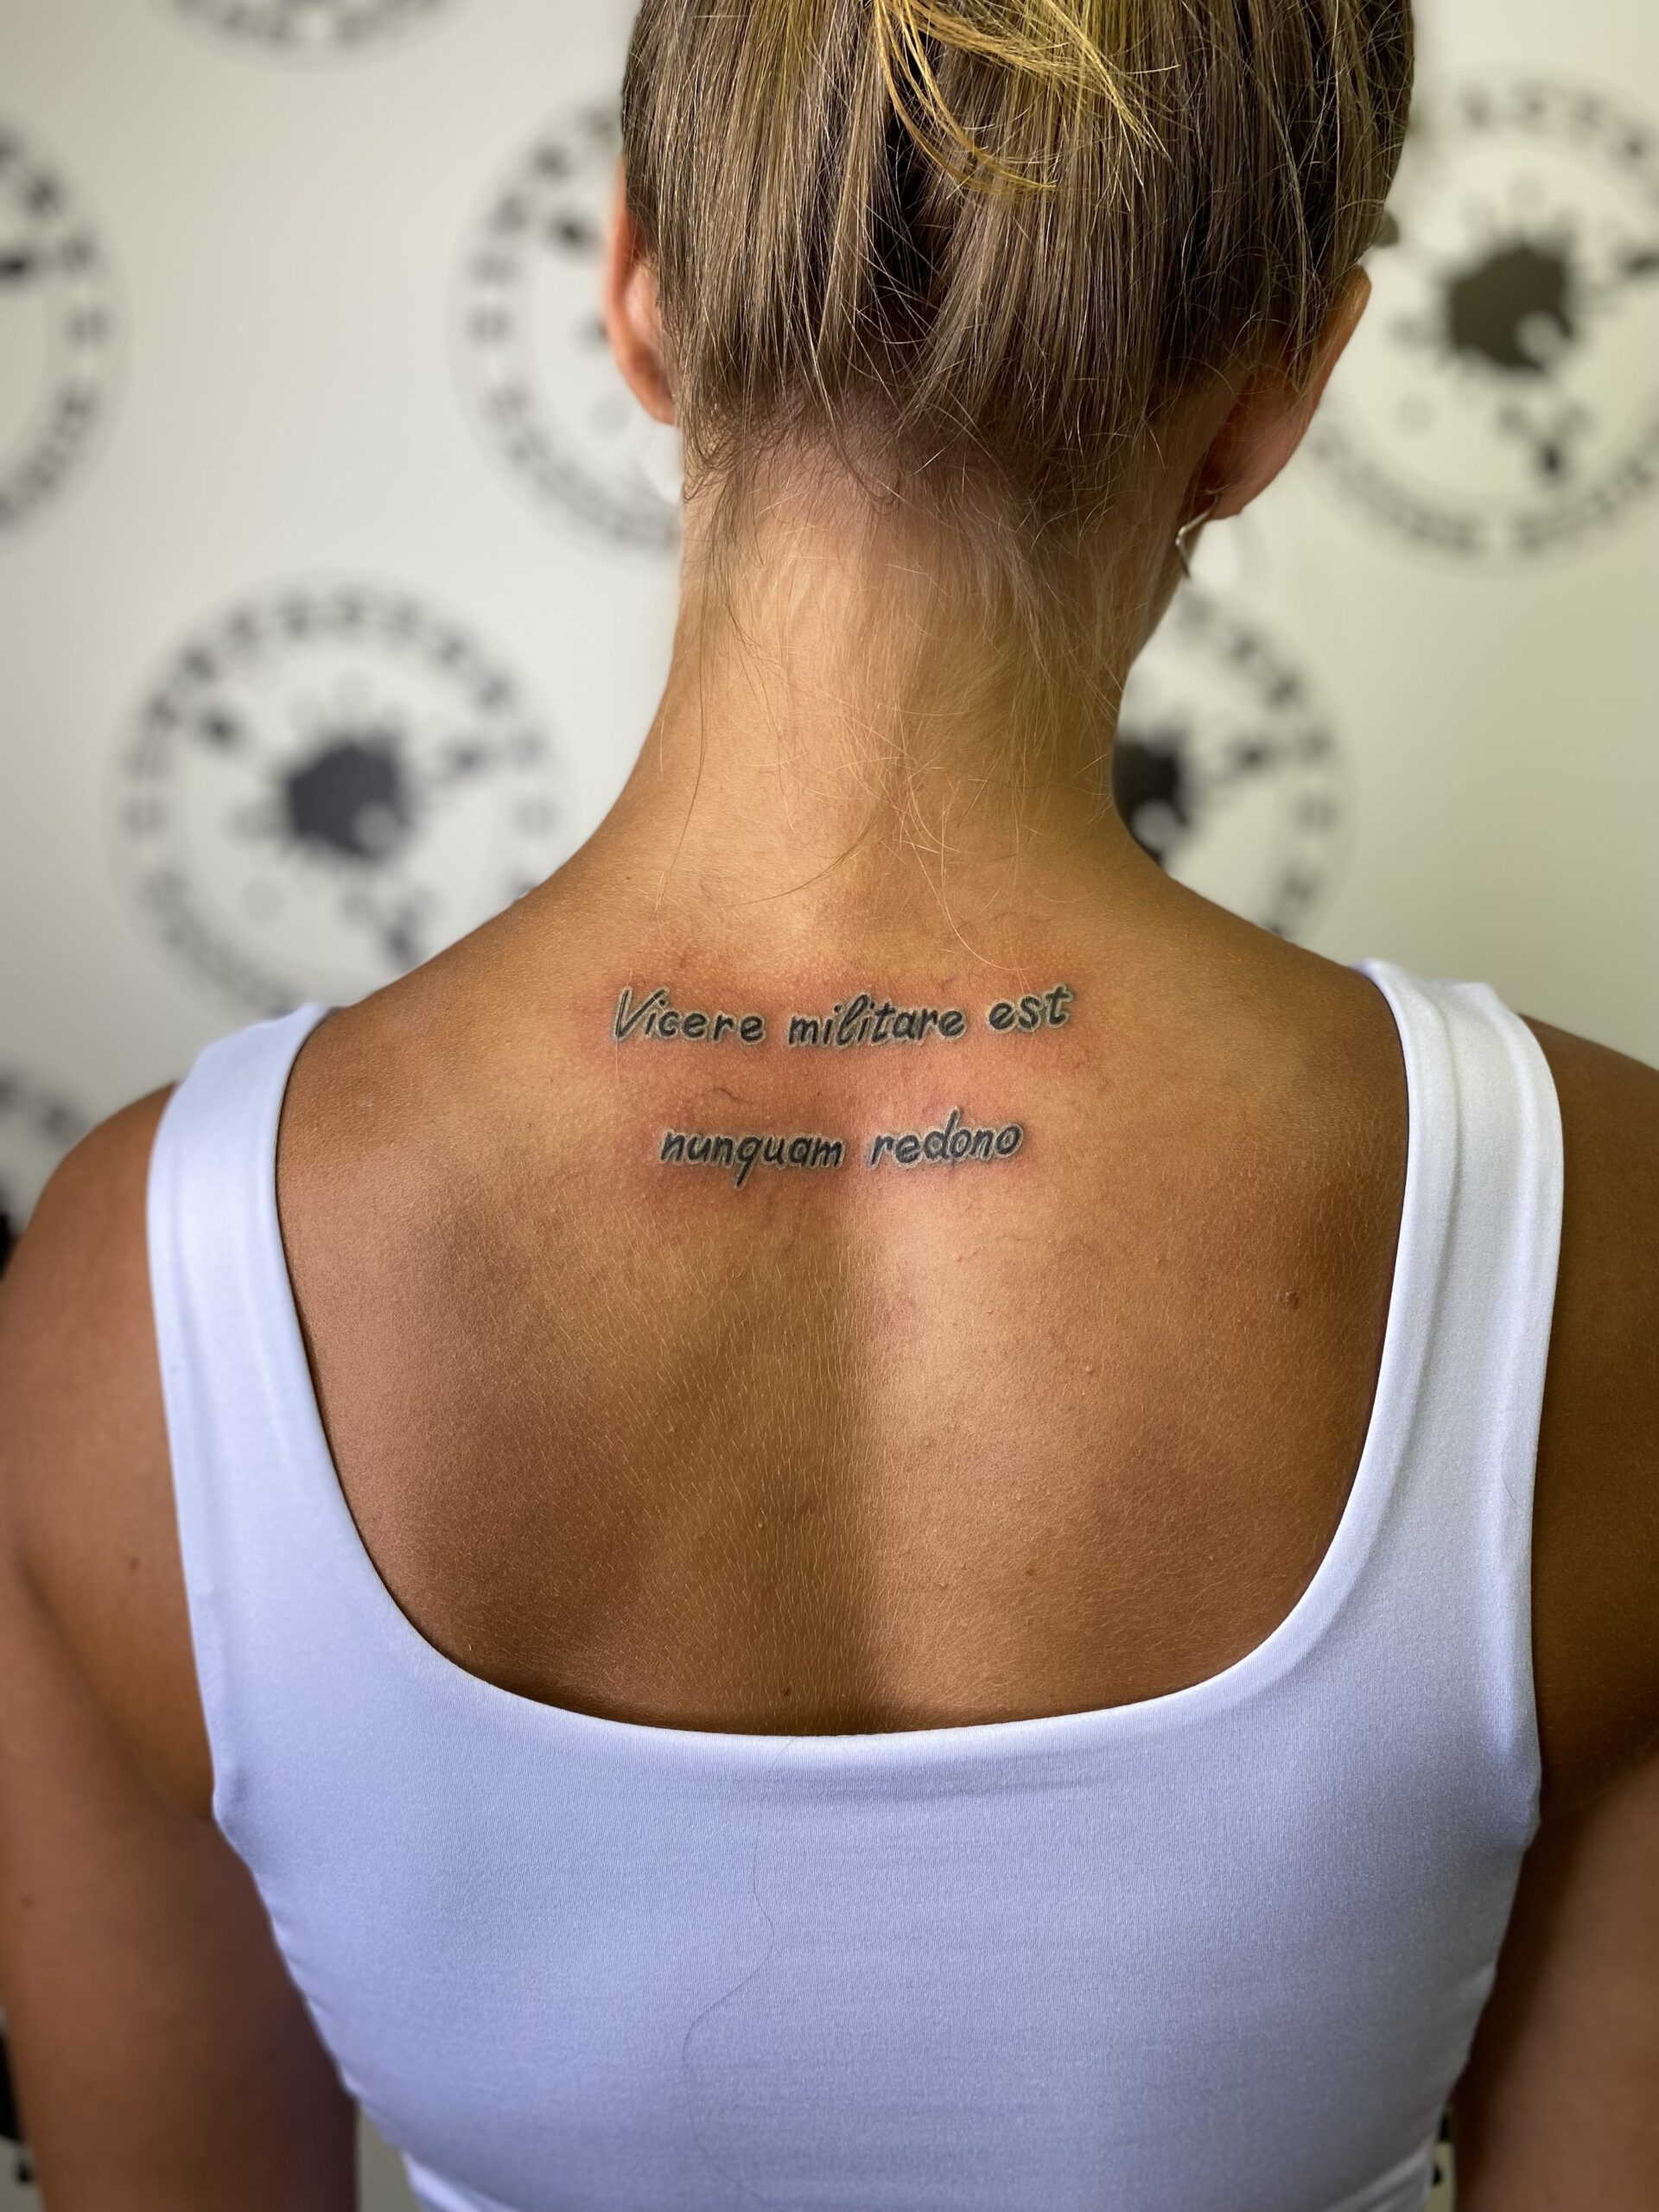 Пилинг татуировки: Почему это происходит и как за ним ухаживать?